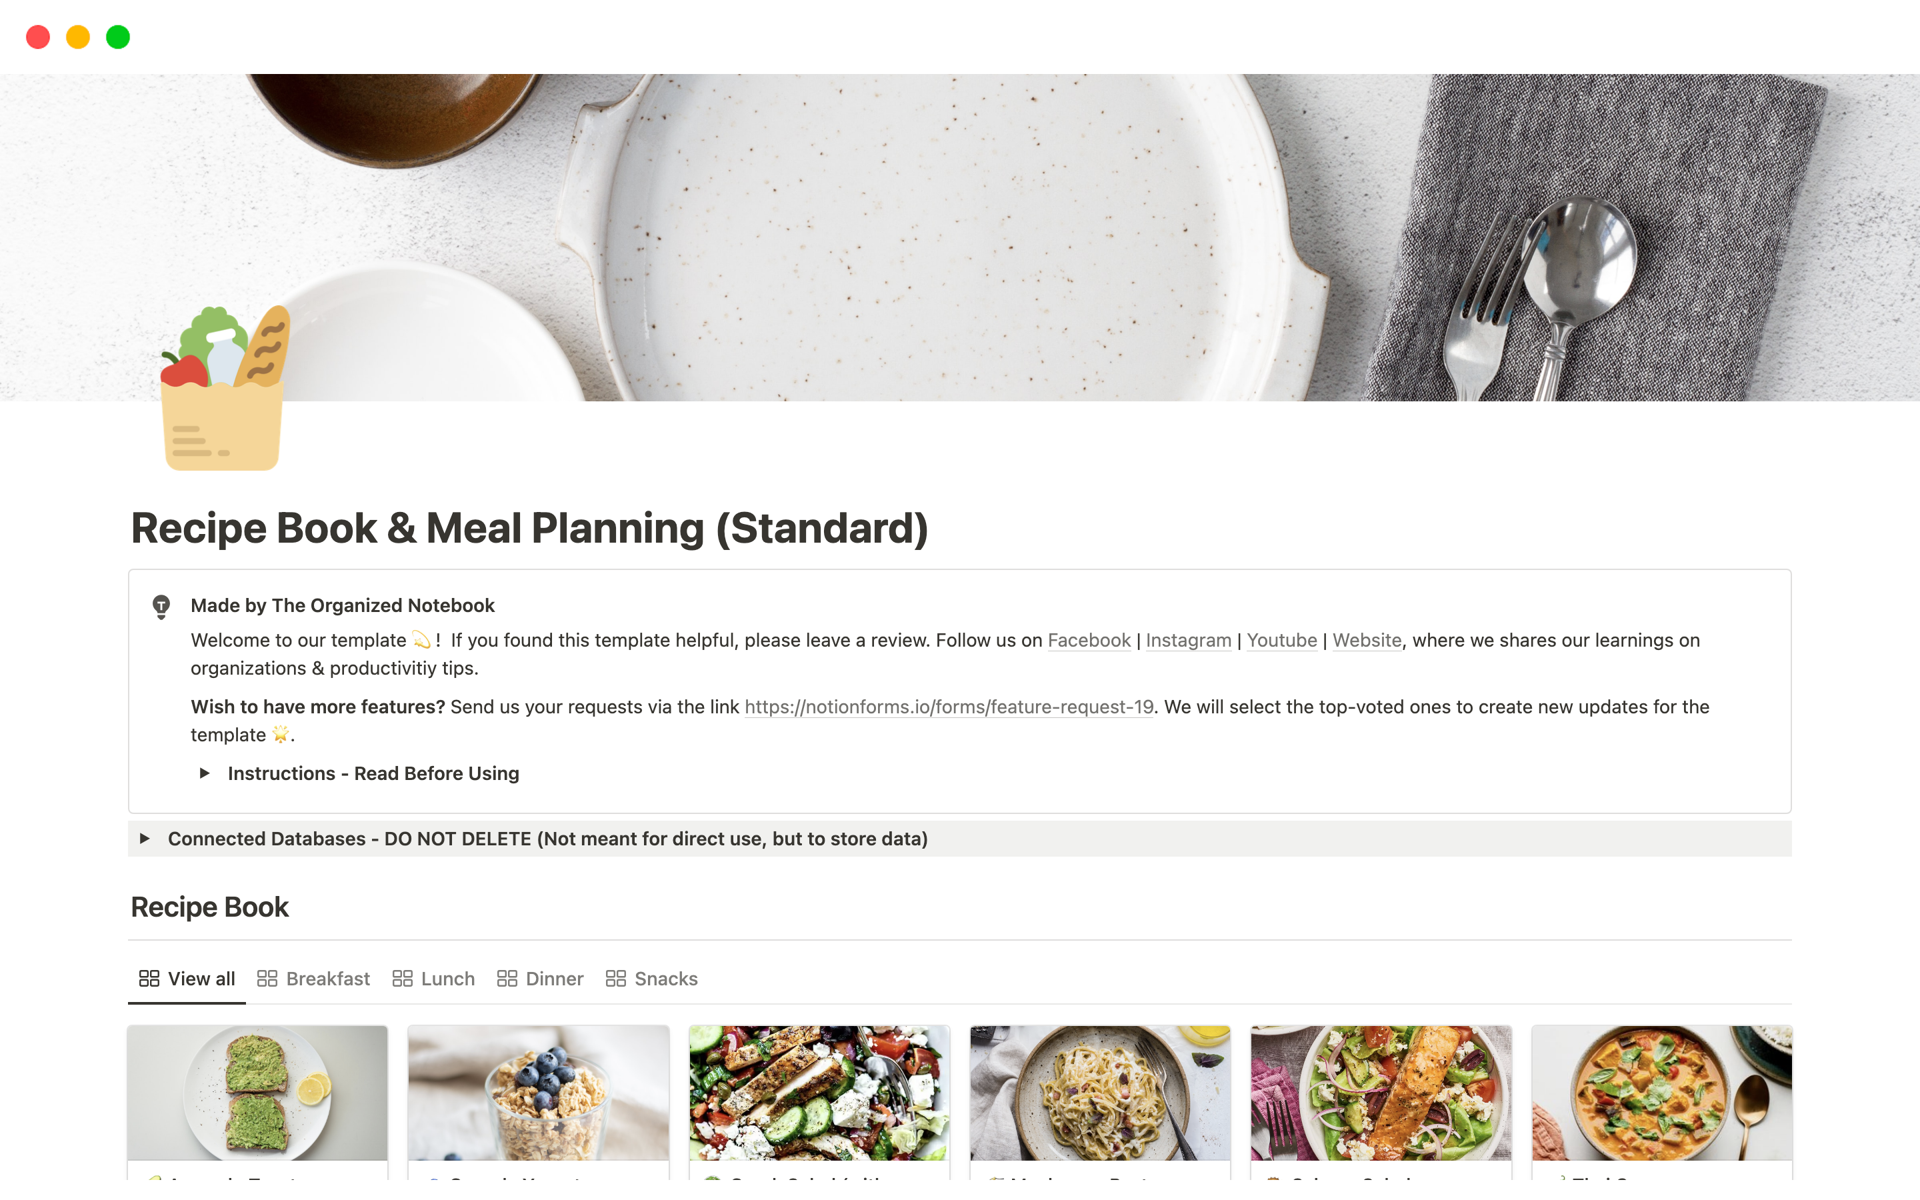 Aperçu du modèle de Recipe Book & Meal Planning (Standard)